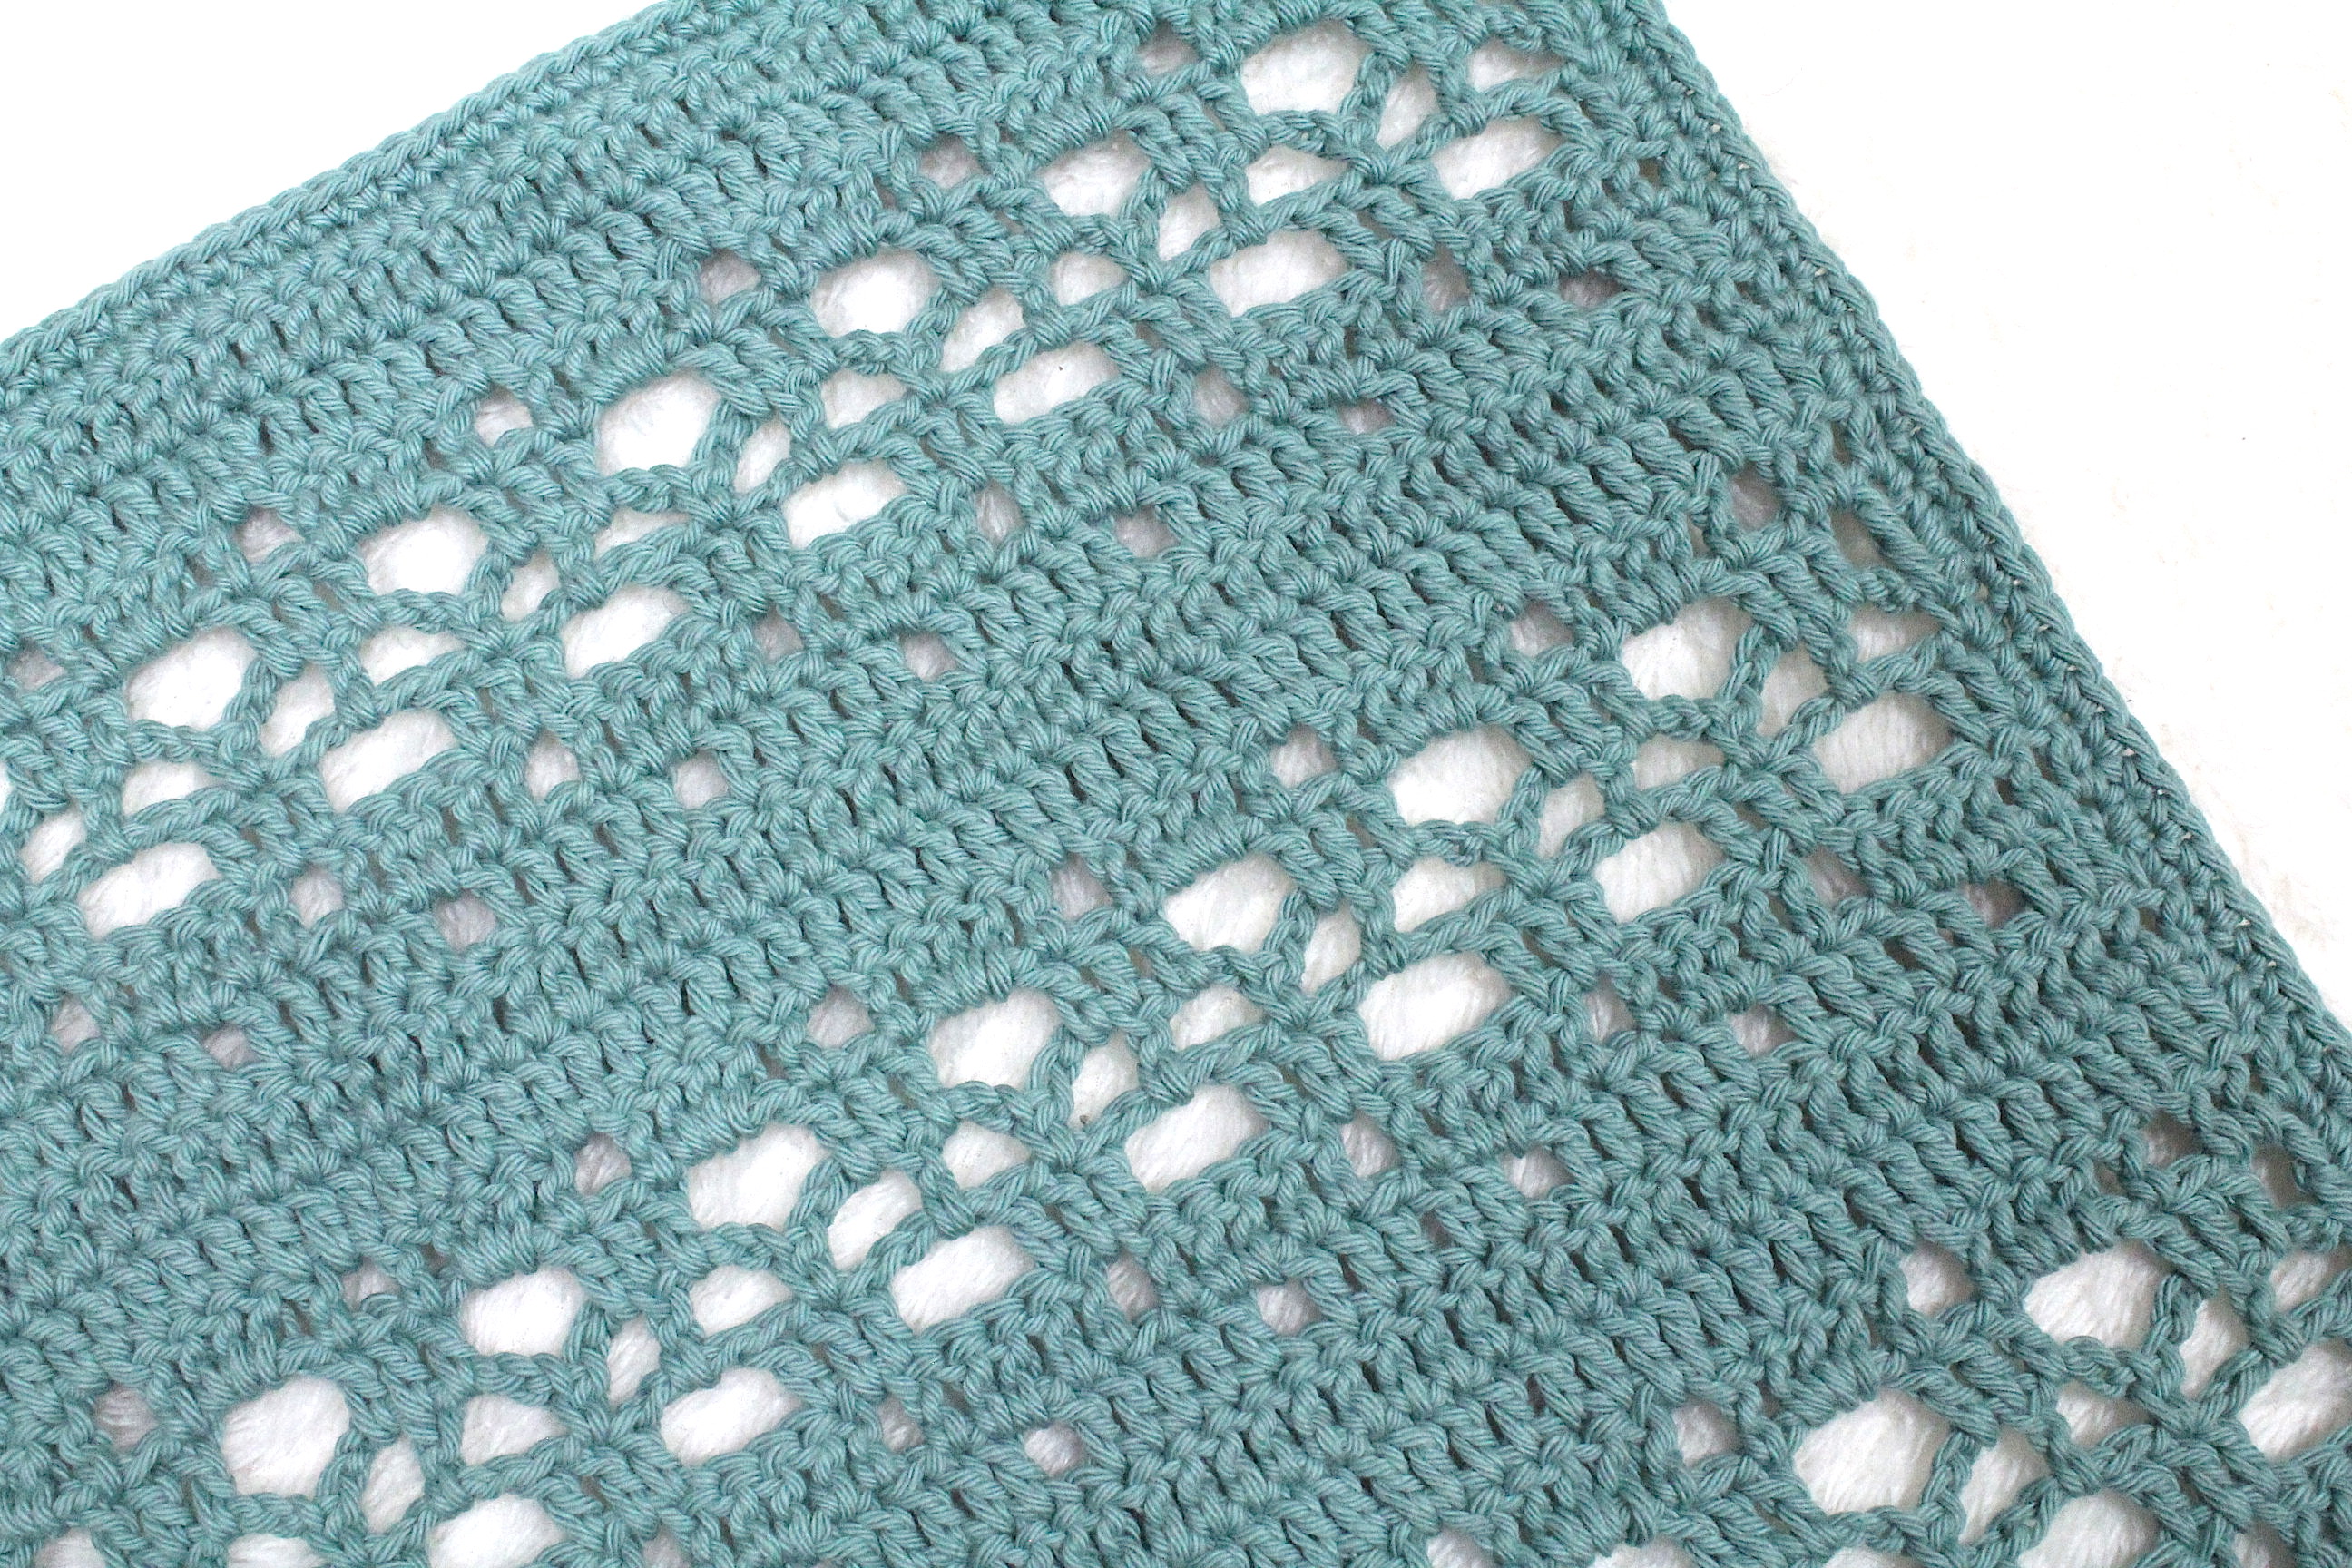 Transpire Blanket - Free Crochet Pattern